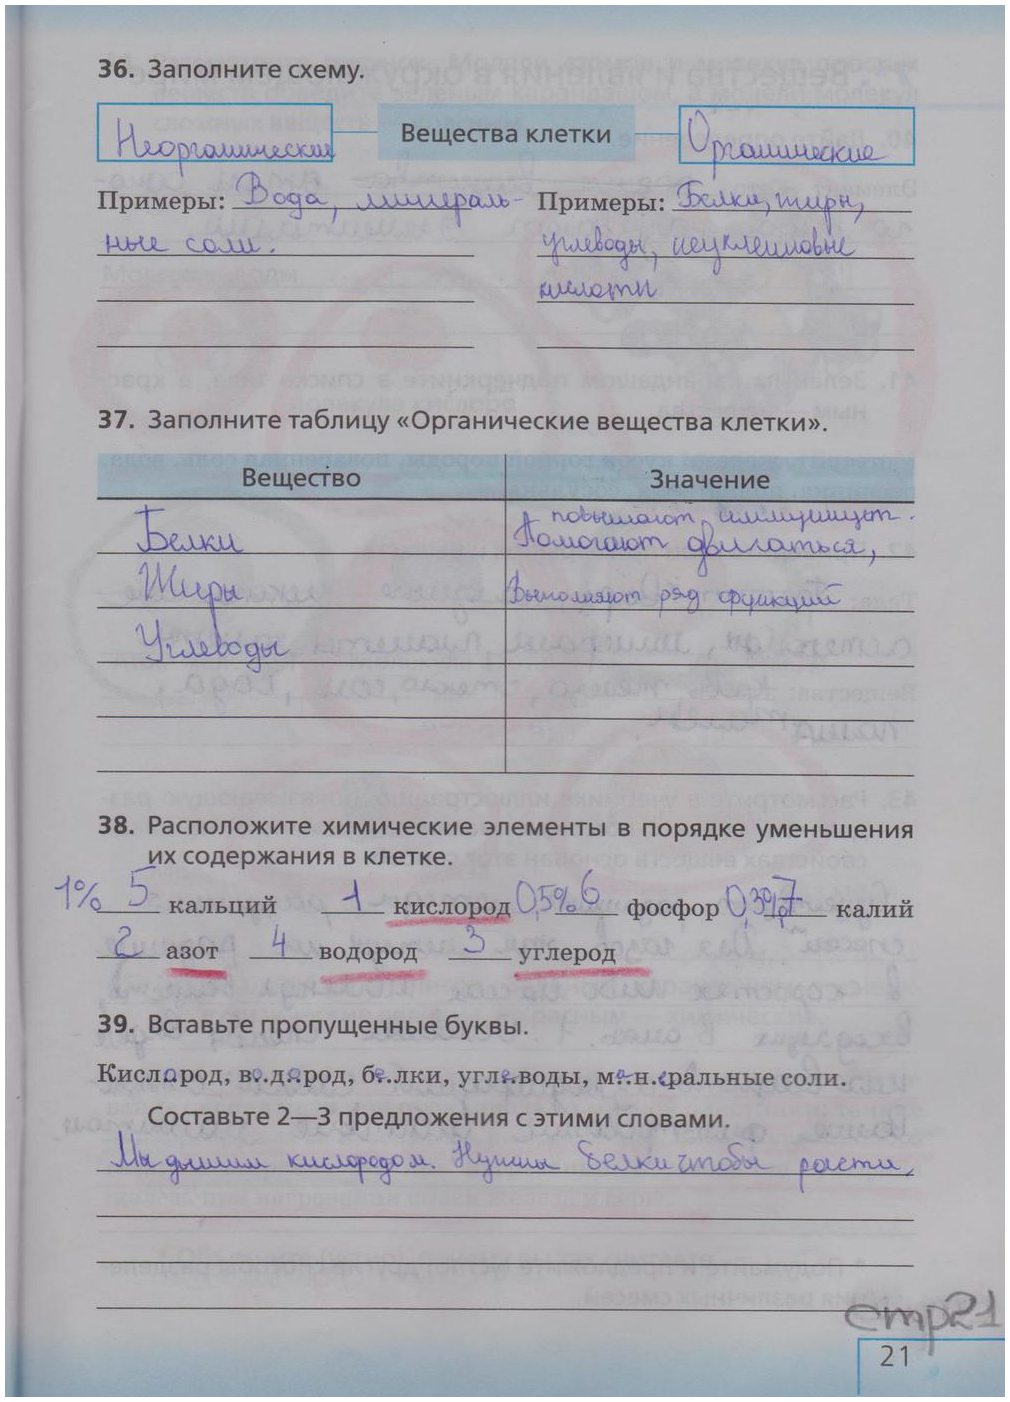 гдз 5 класс рабочая тетрадь страница 21 биология Сонин, Плешаков